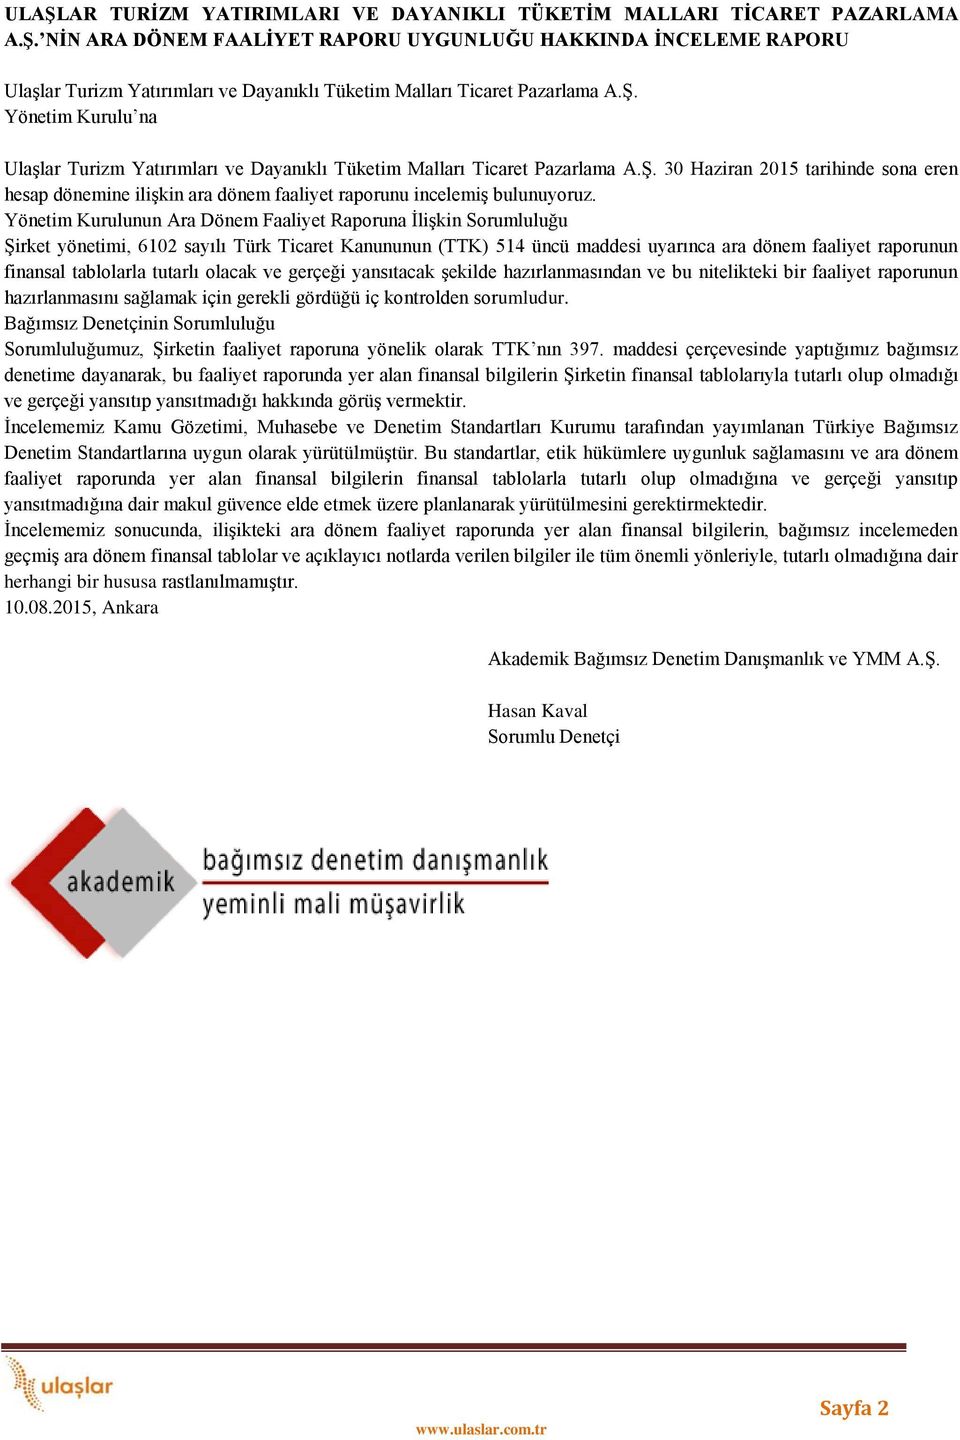 Yönetim Kurulunun Ara Dönem Faaliyet Raporuna İlişkin Sorumluluğu Şirket yönetimi, 6102 sayılı Türk Ticaret Kanununun (TTK) 514 üncü maddesi uyarınca ara dönem faaliyet raporunun finansal tablolarla